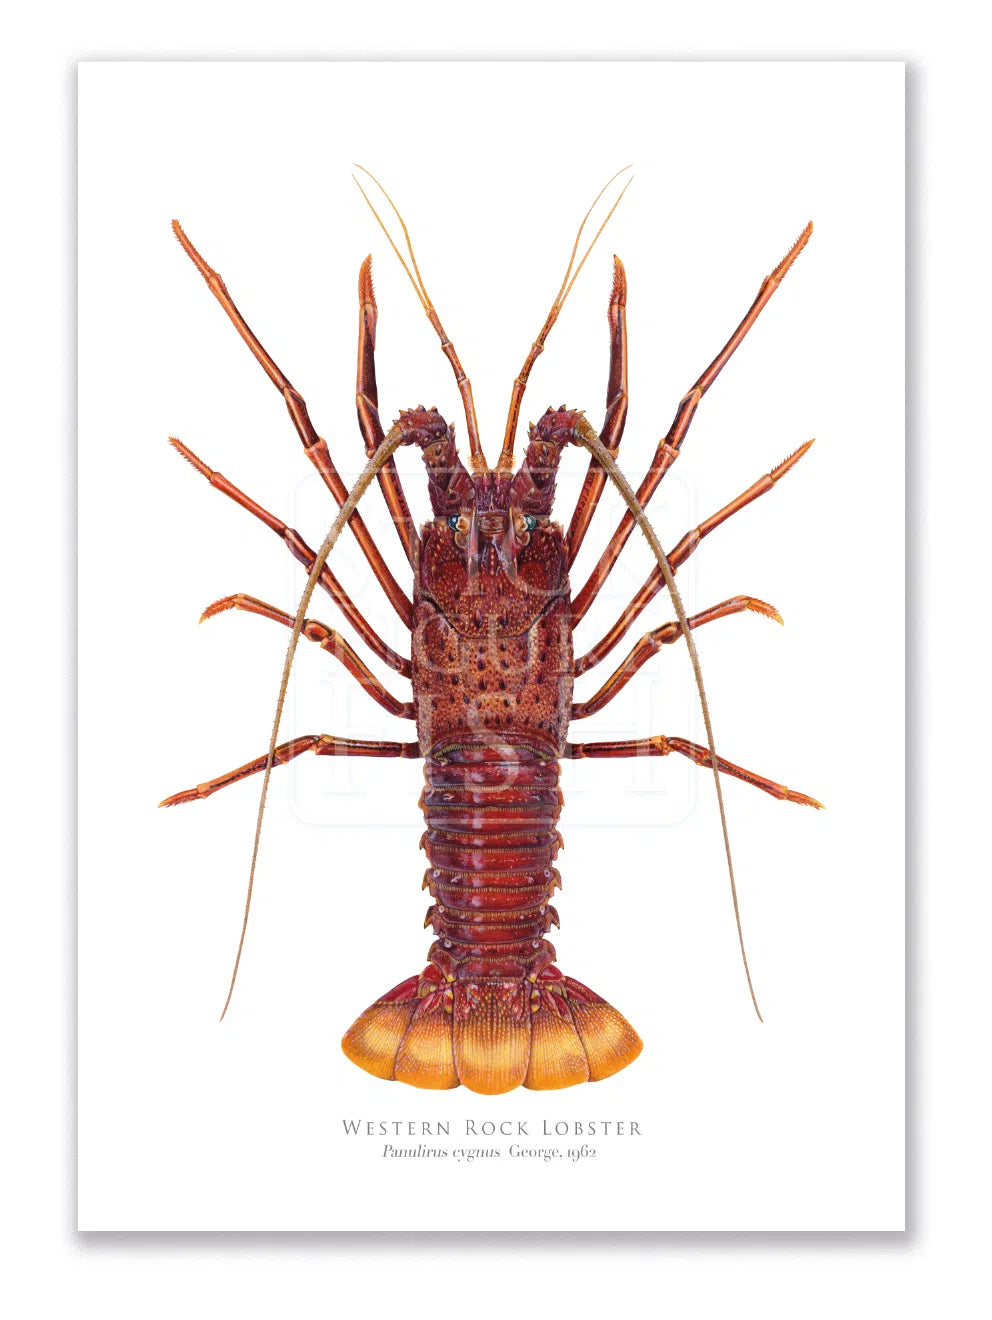 Western Rock lobster Panulirus cygnus (George, 1962) - Fine Art Print-Stick Figure Fish Illustration